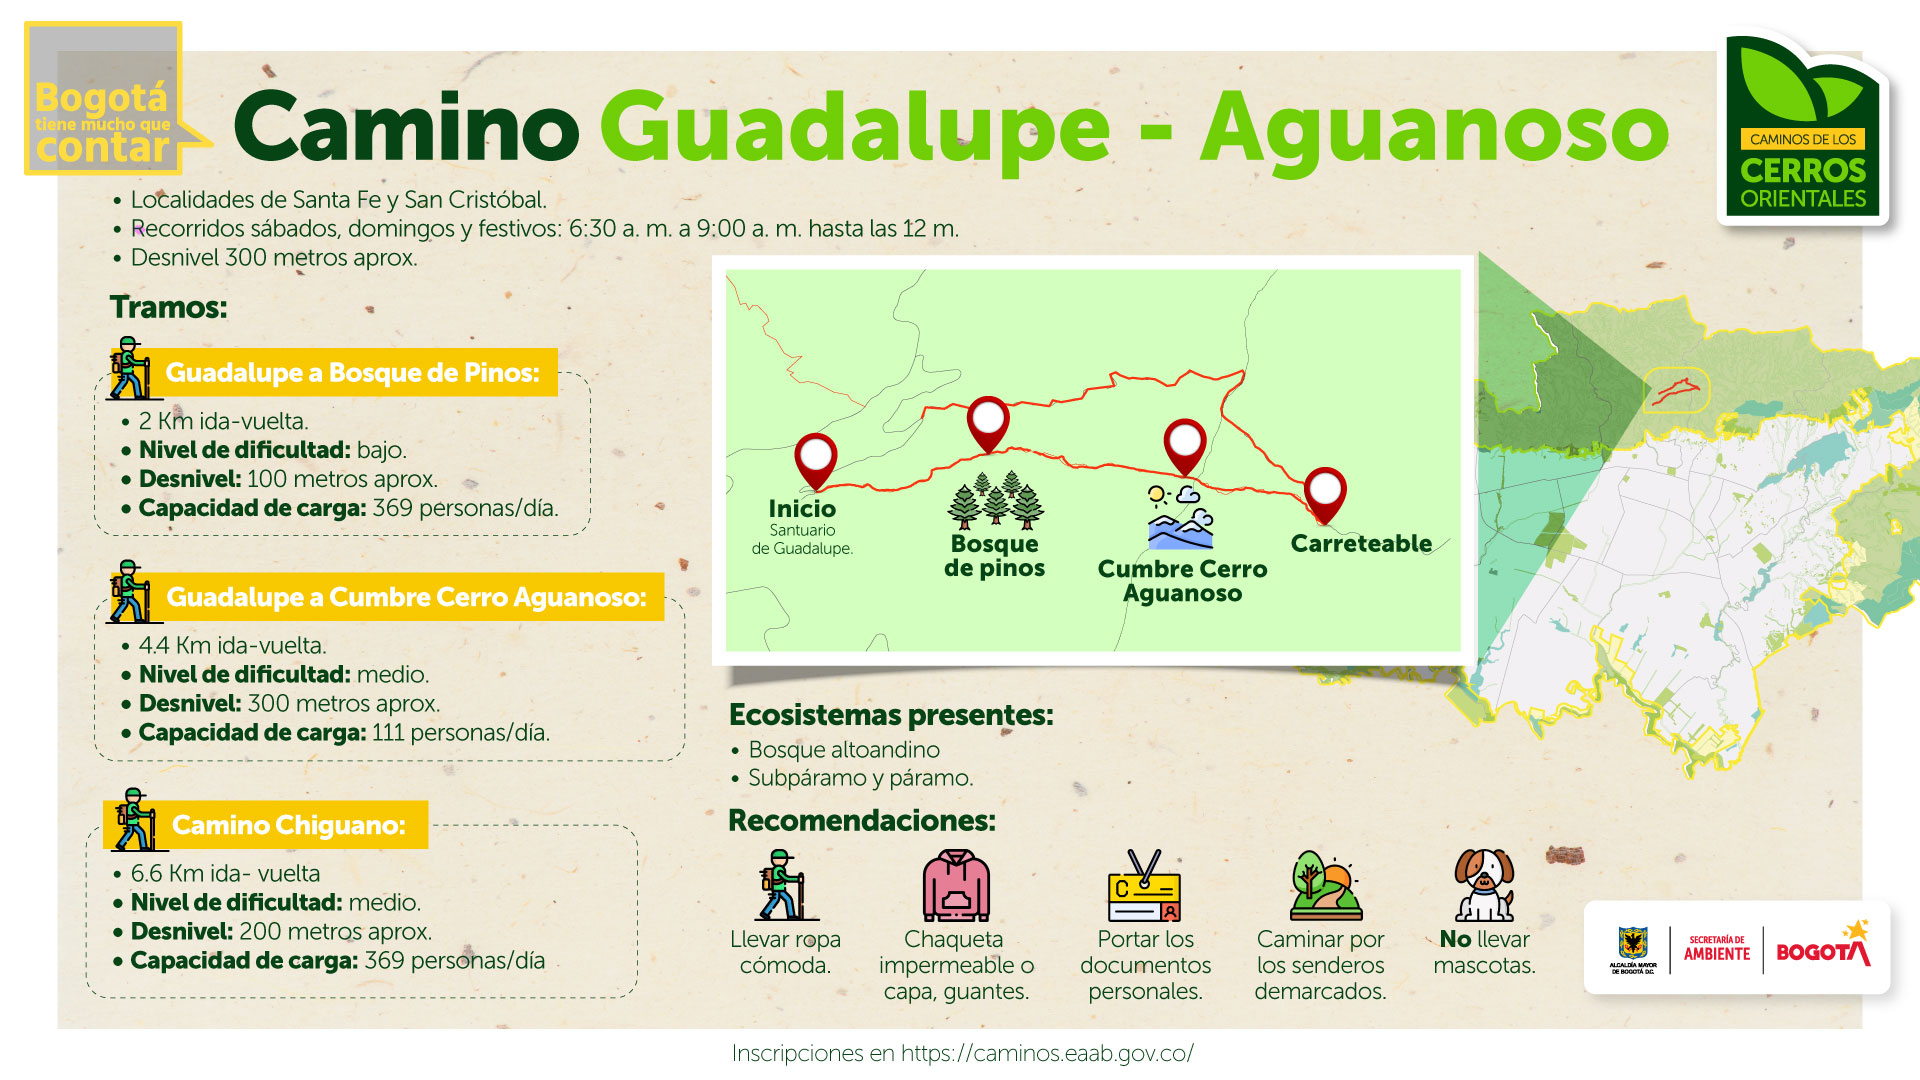 Camino Guadalupe - Aguanoso